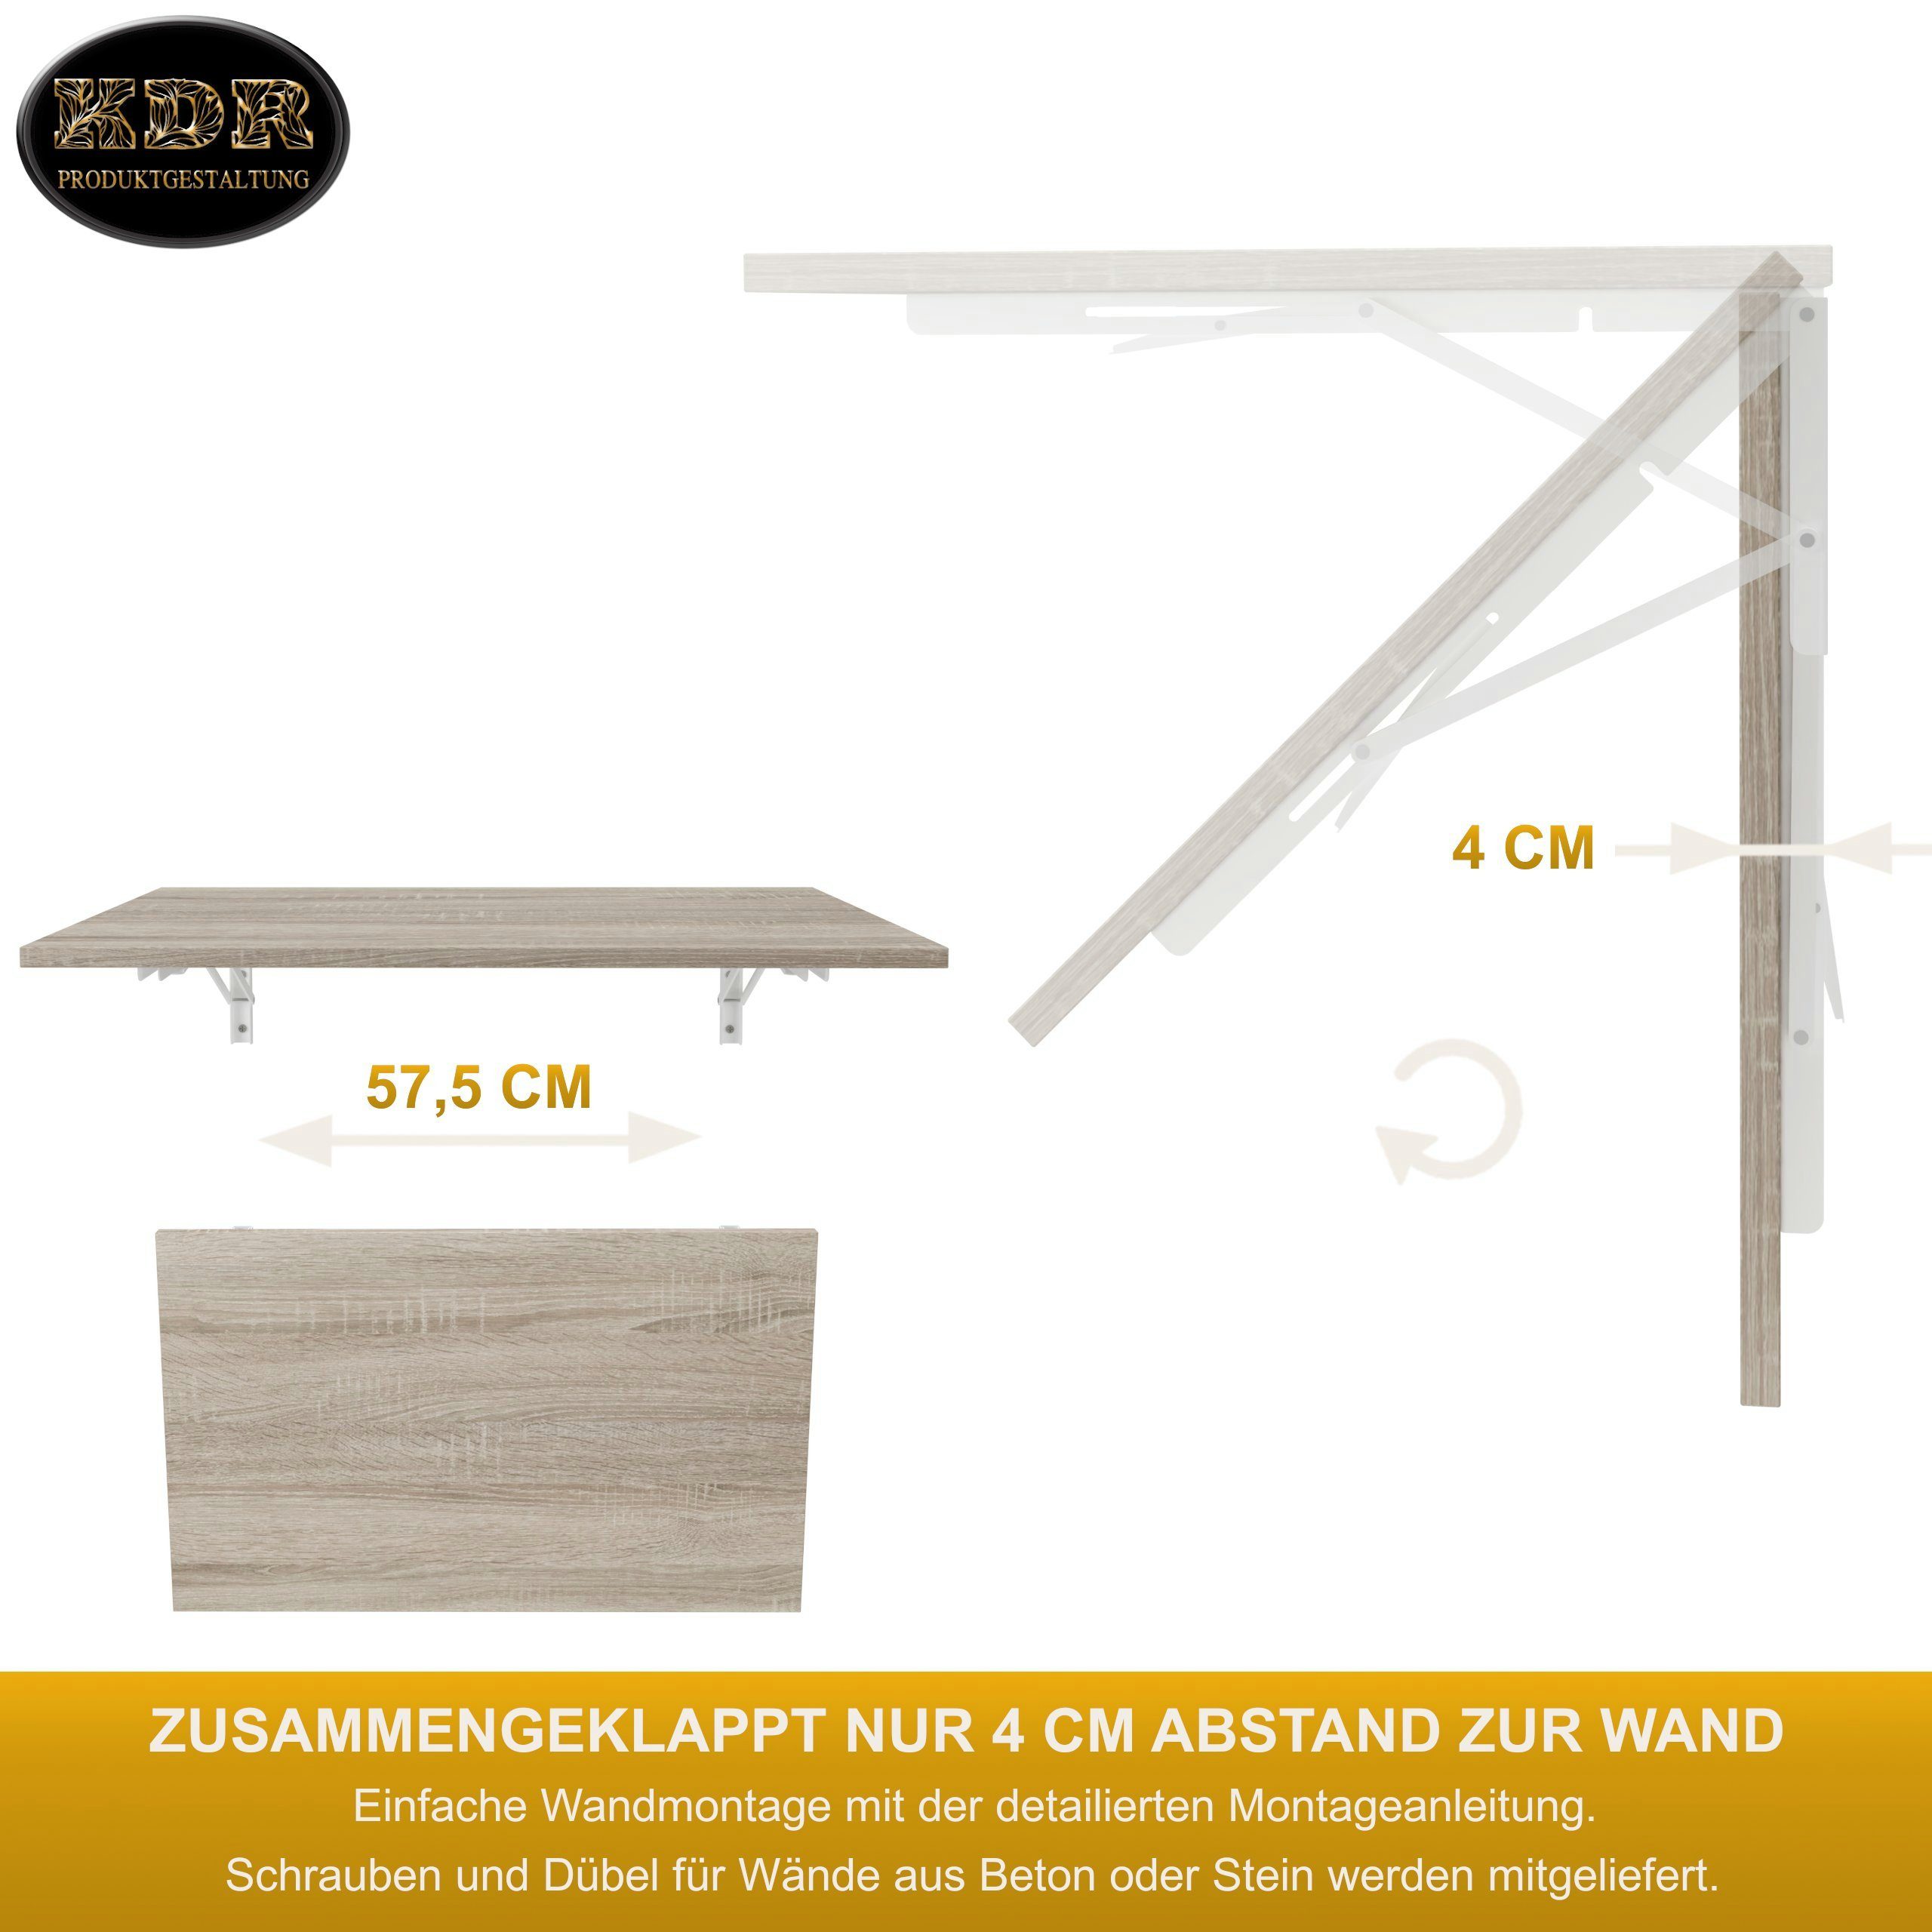 KDR Produktgestaltung Klapptisch 80x50 Wandklapptisch Wand Schreibtisch Tisch, Sonoma Esstisch Eiche Küchentisch